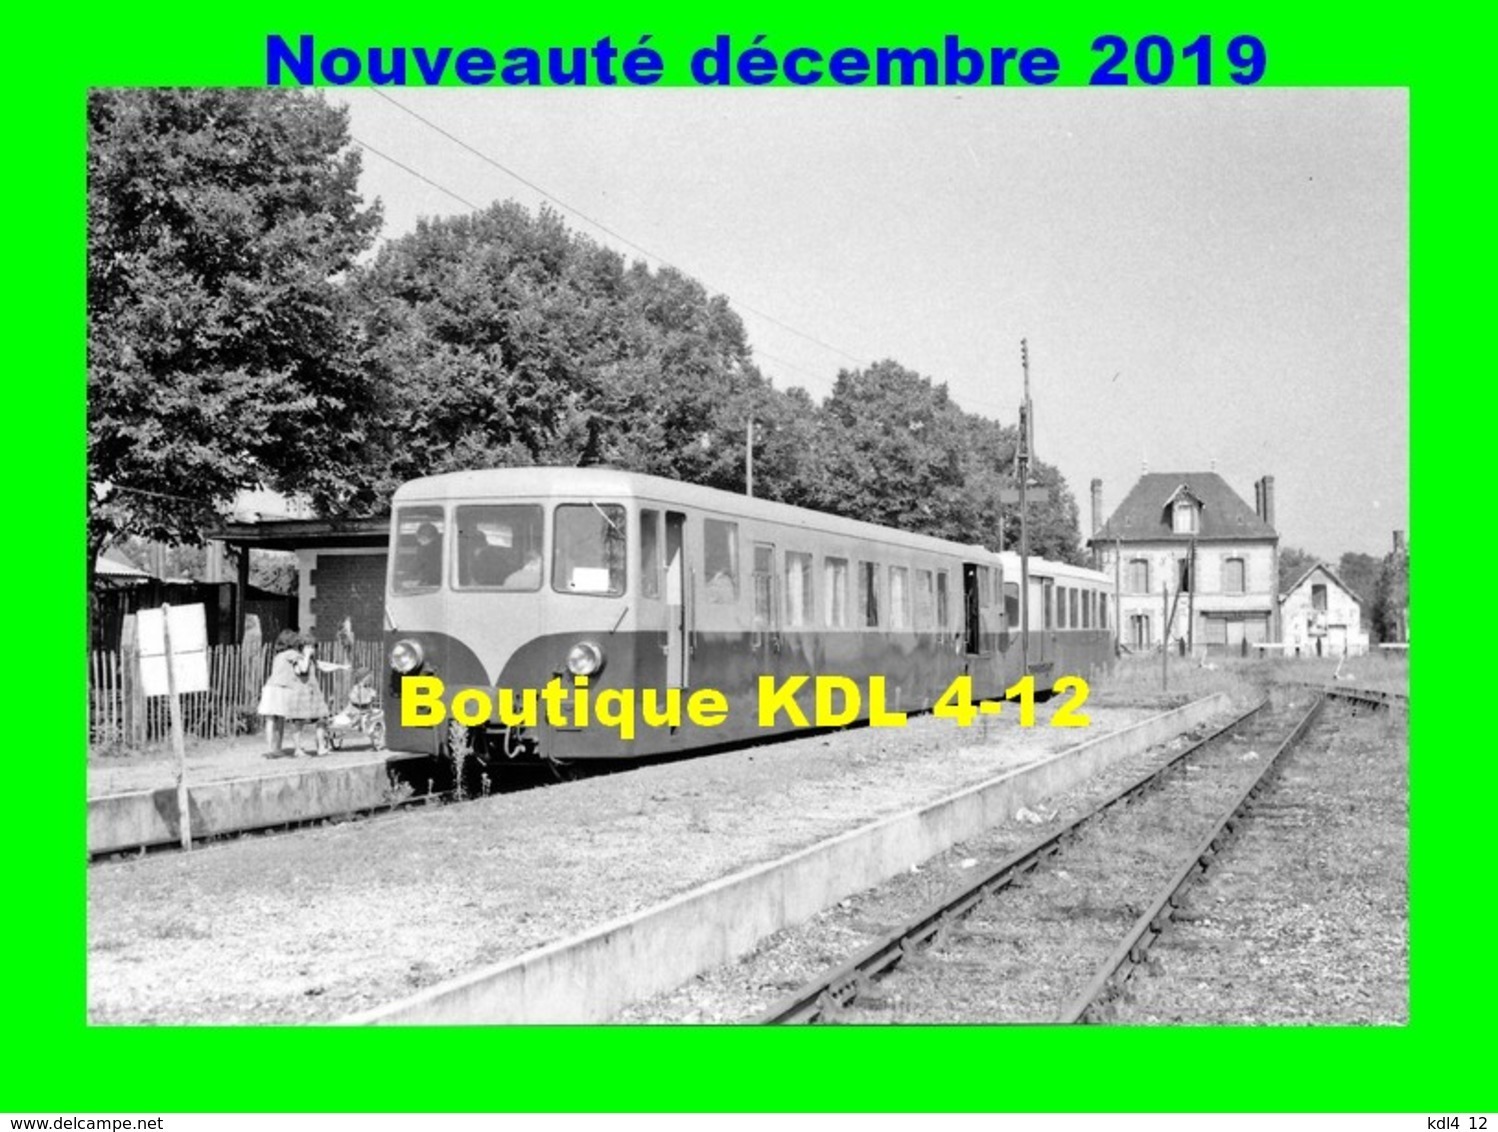 AL 625 - Autorail Verney En Gare - SALBRIS - Loir Et Cher - BA - Trains